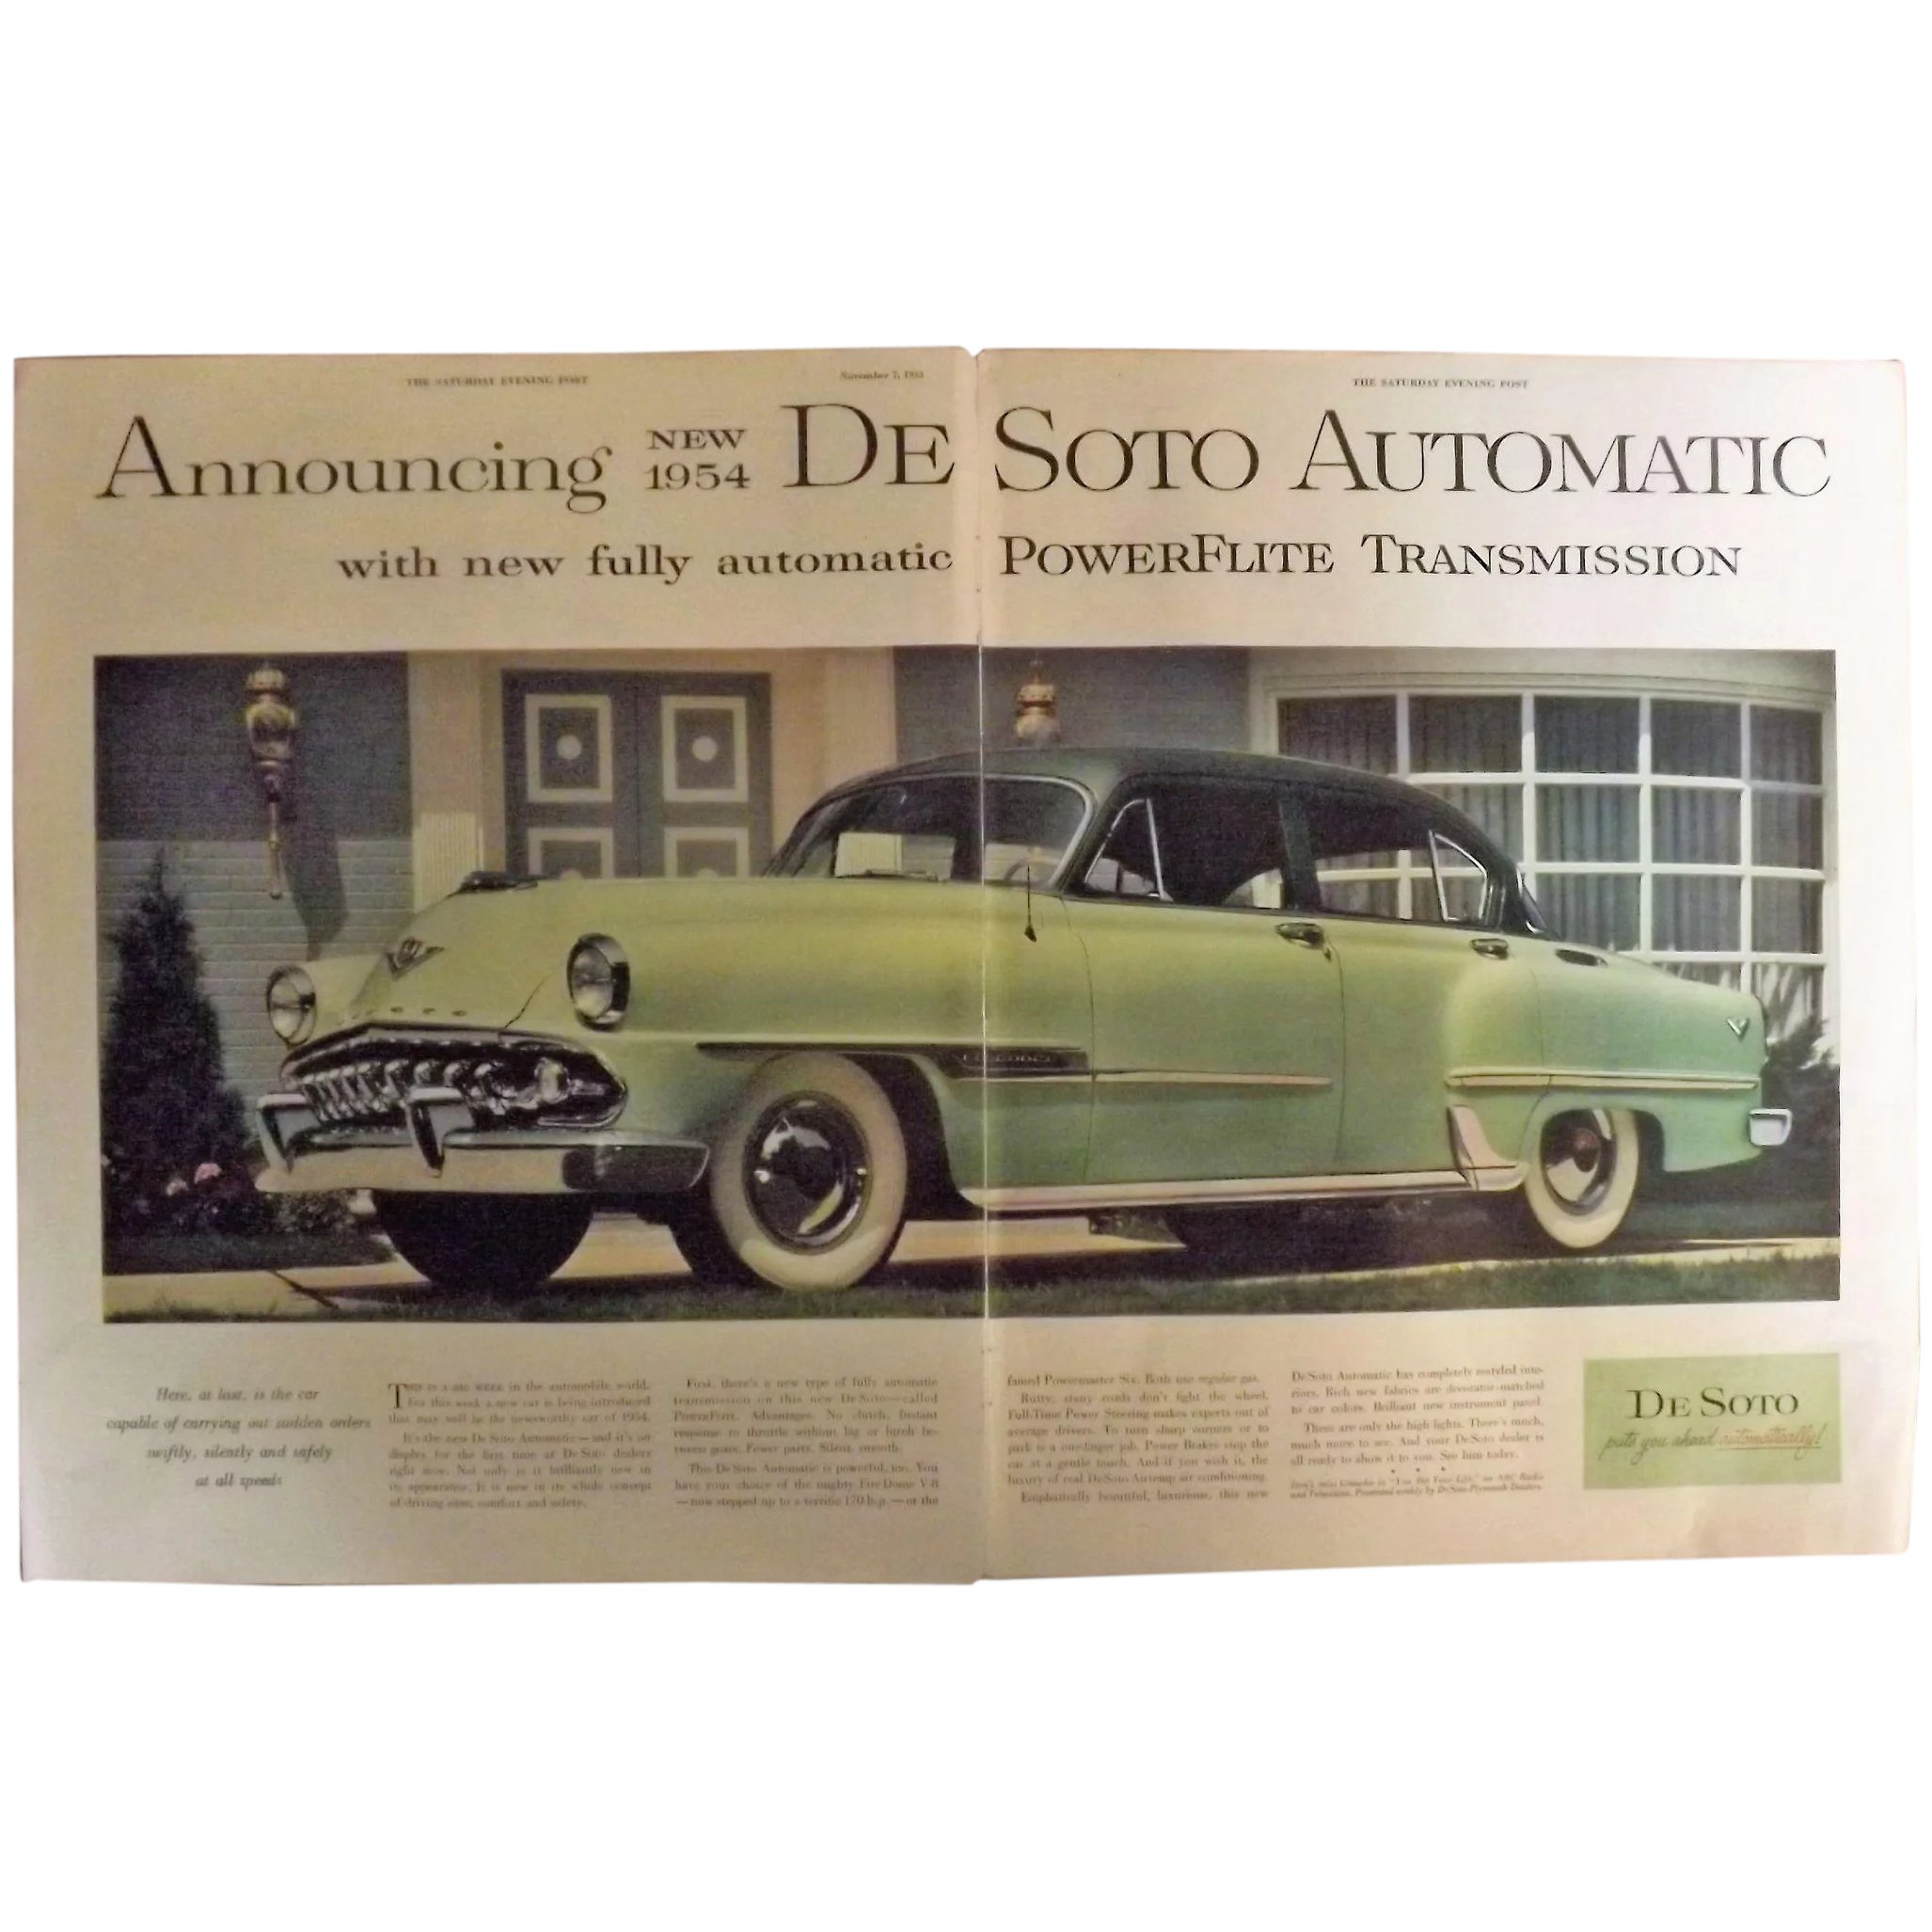 DE SOTO New 1954 Automatic Original Double Page Advertisement